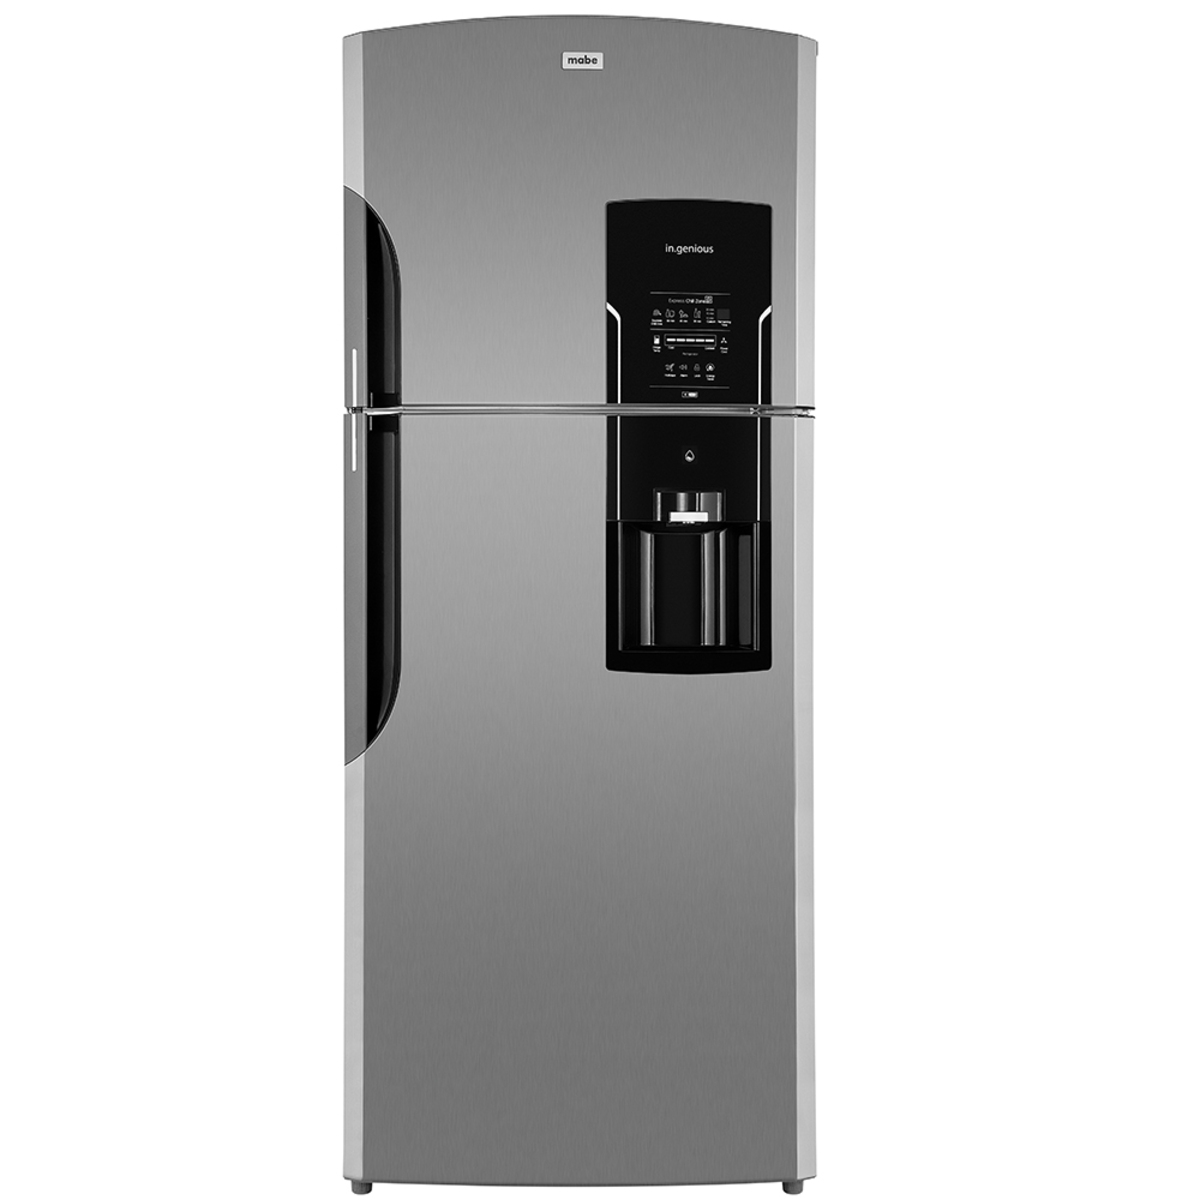 Refrigerador Automático 400 L Inoxidable Mabe - RMS400IBMRX0, Refrigeradores, Soluciones de Refrigeración en México